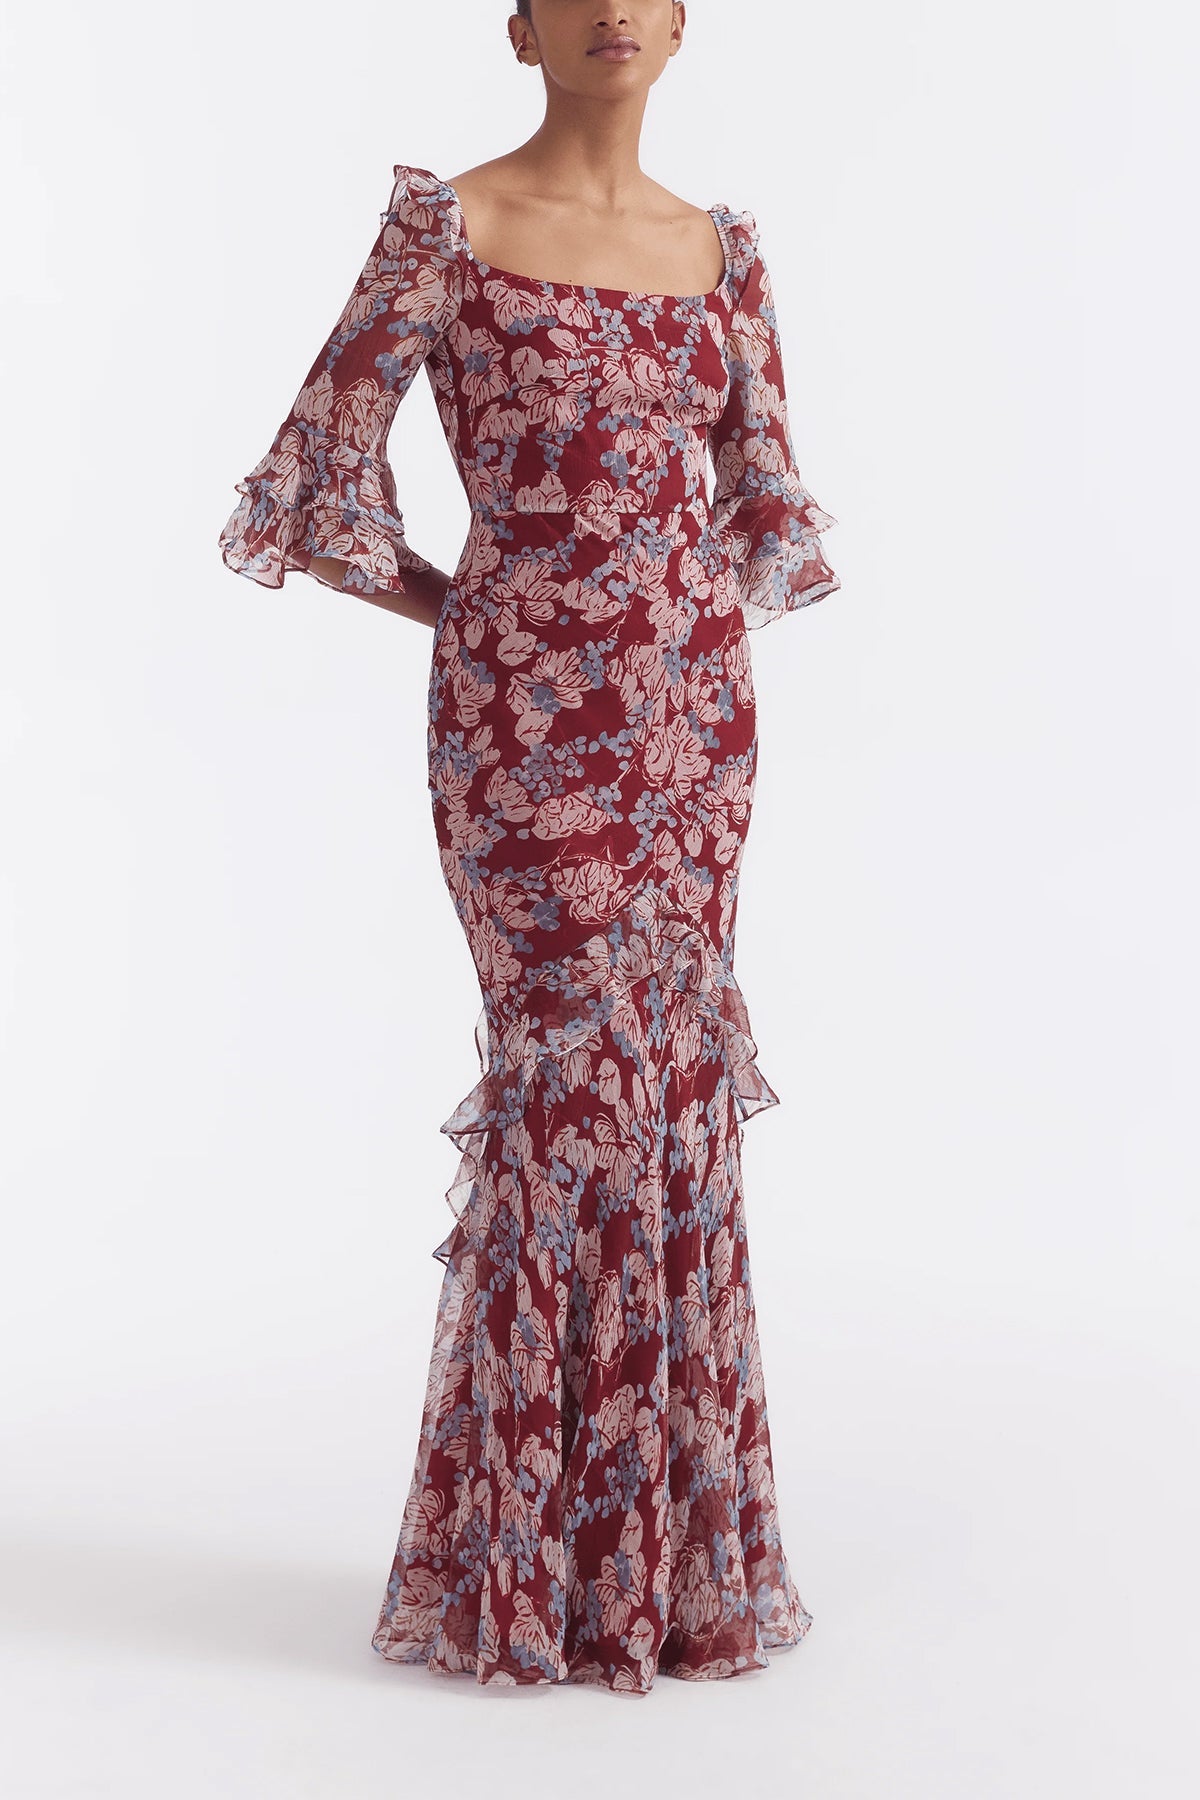 Tamara D Dress in Mulberry Cerise - shop-olivia.com